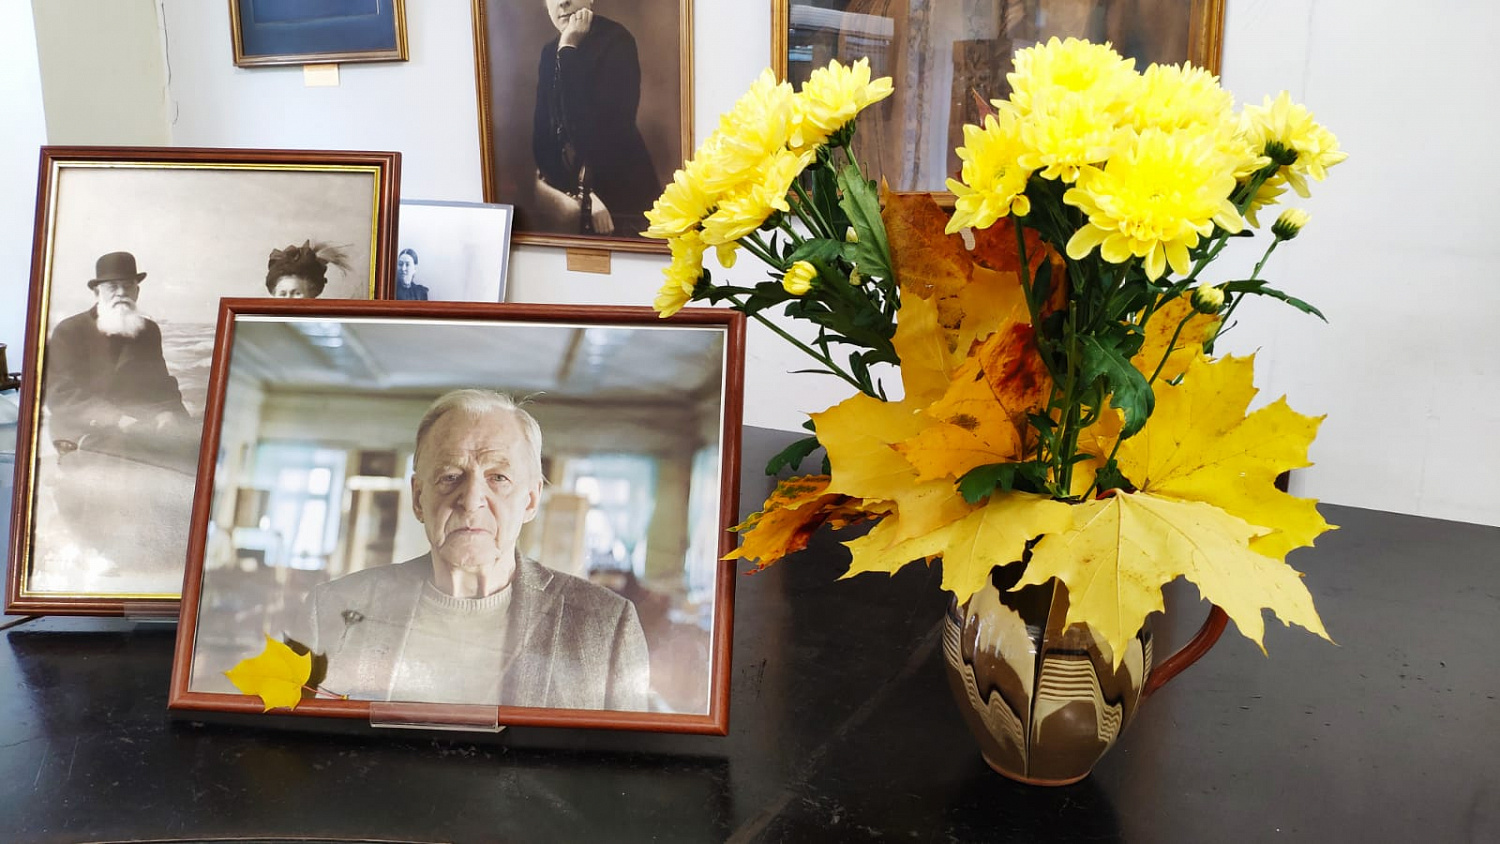 Сегодня - День памяти Льва Николаевича Краснопевцева, основателя и хранителя нашего Музея